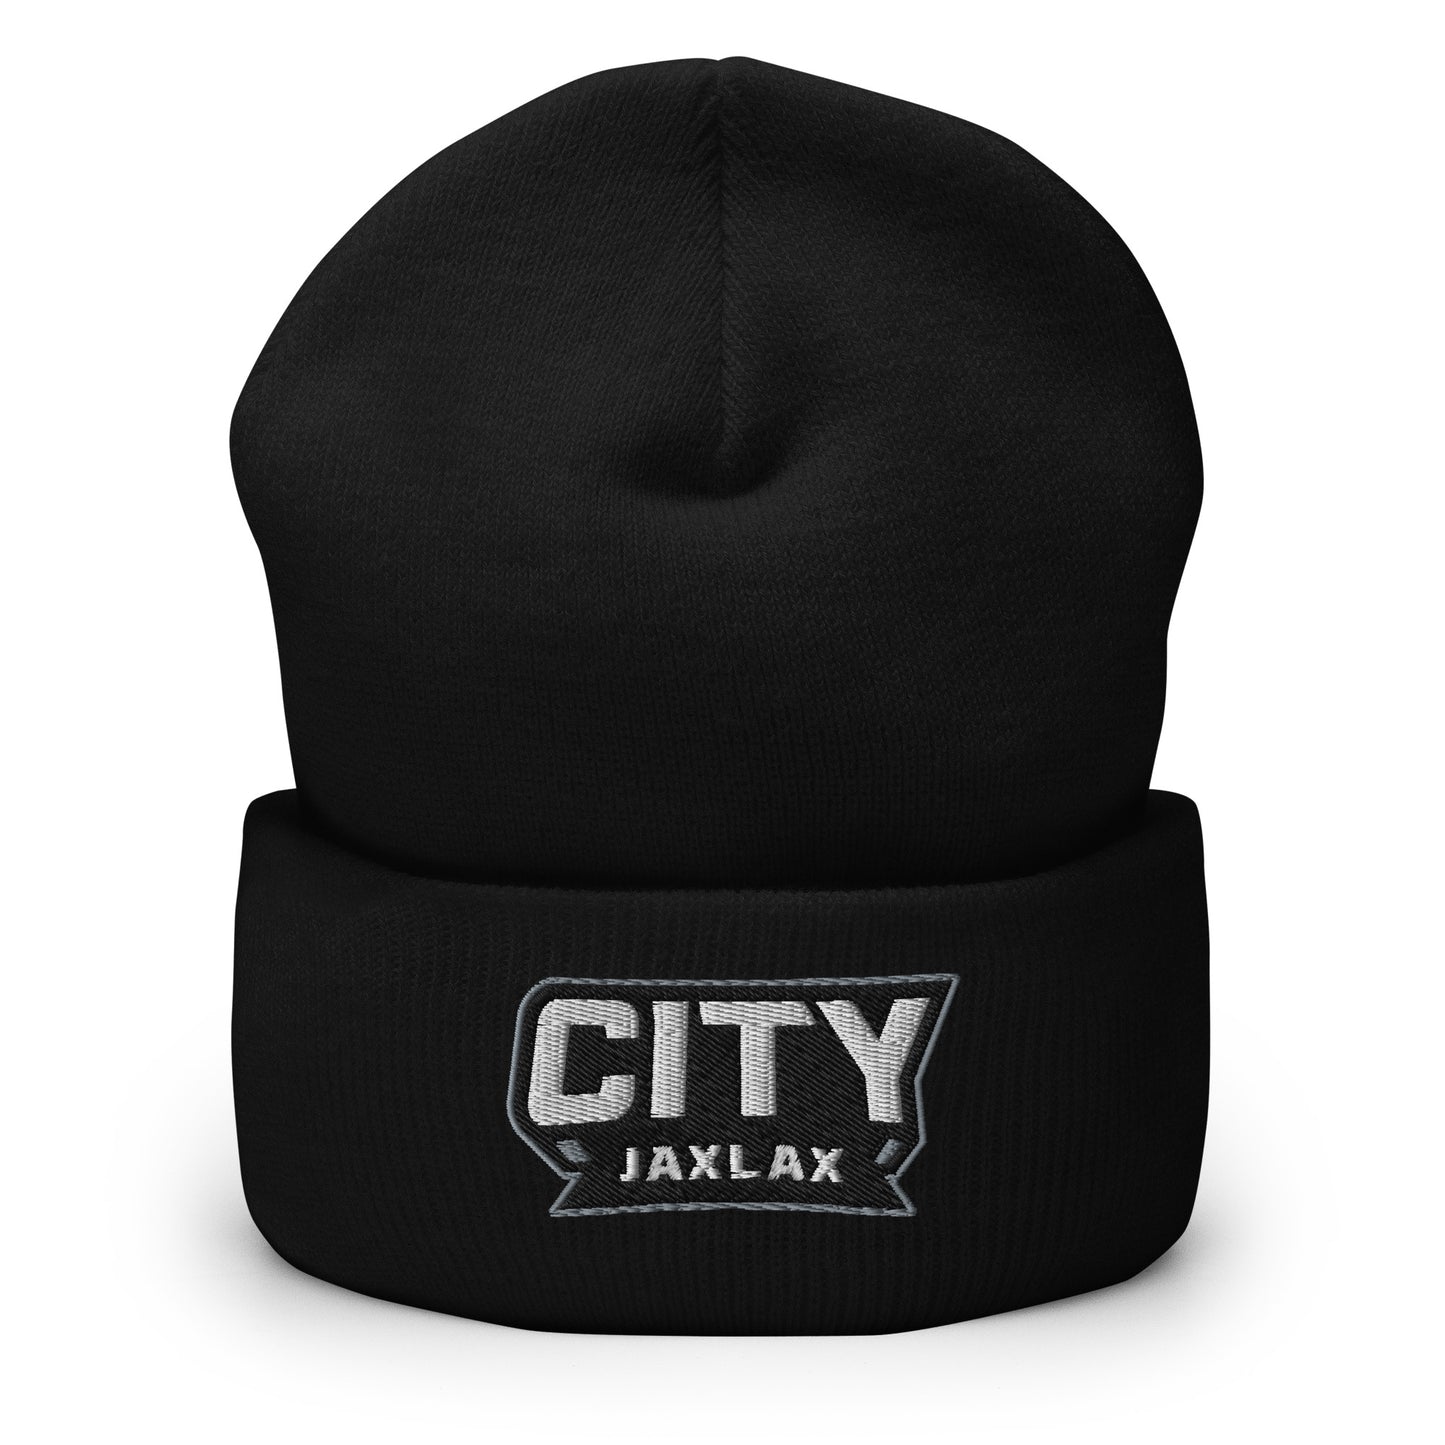 Jax Lax City - Cuffed Beanie